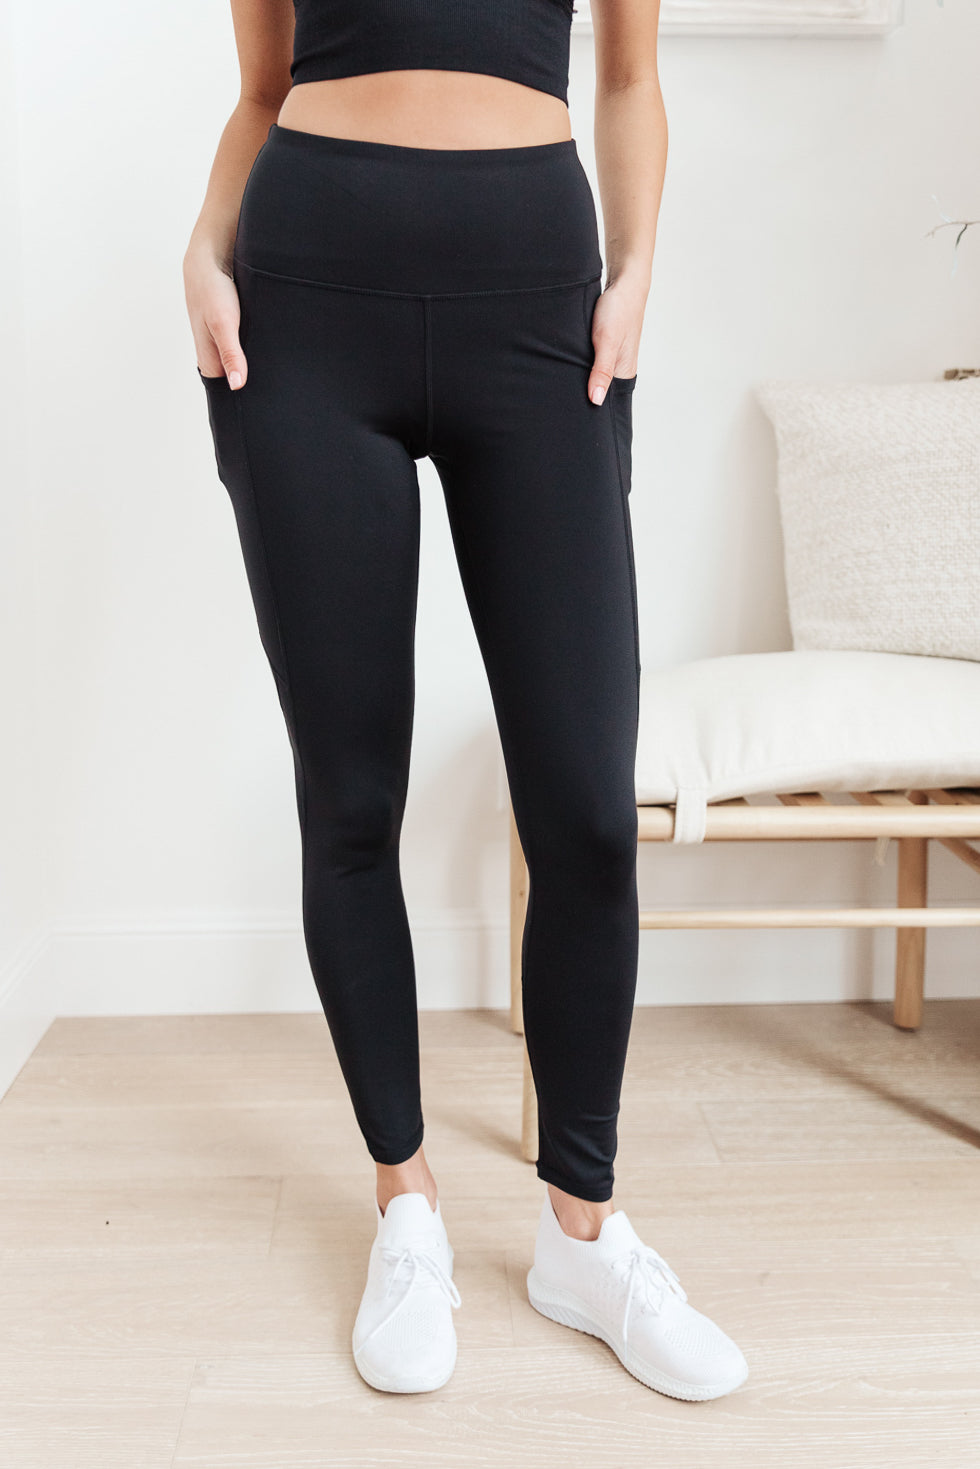 Leggings | Flaunt Boutique: Online Women's Clothing Boutique | Texas Based